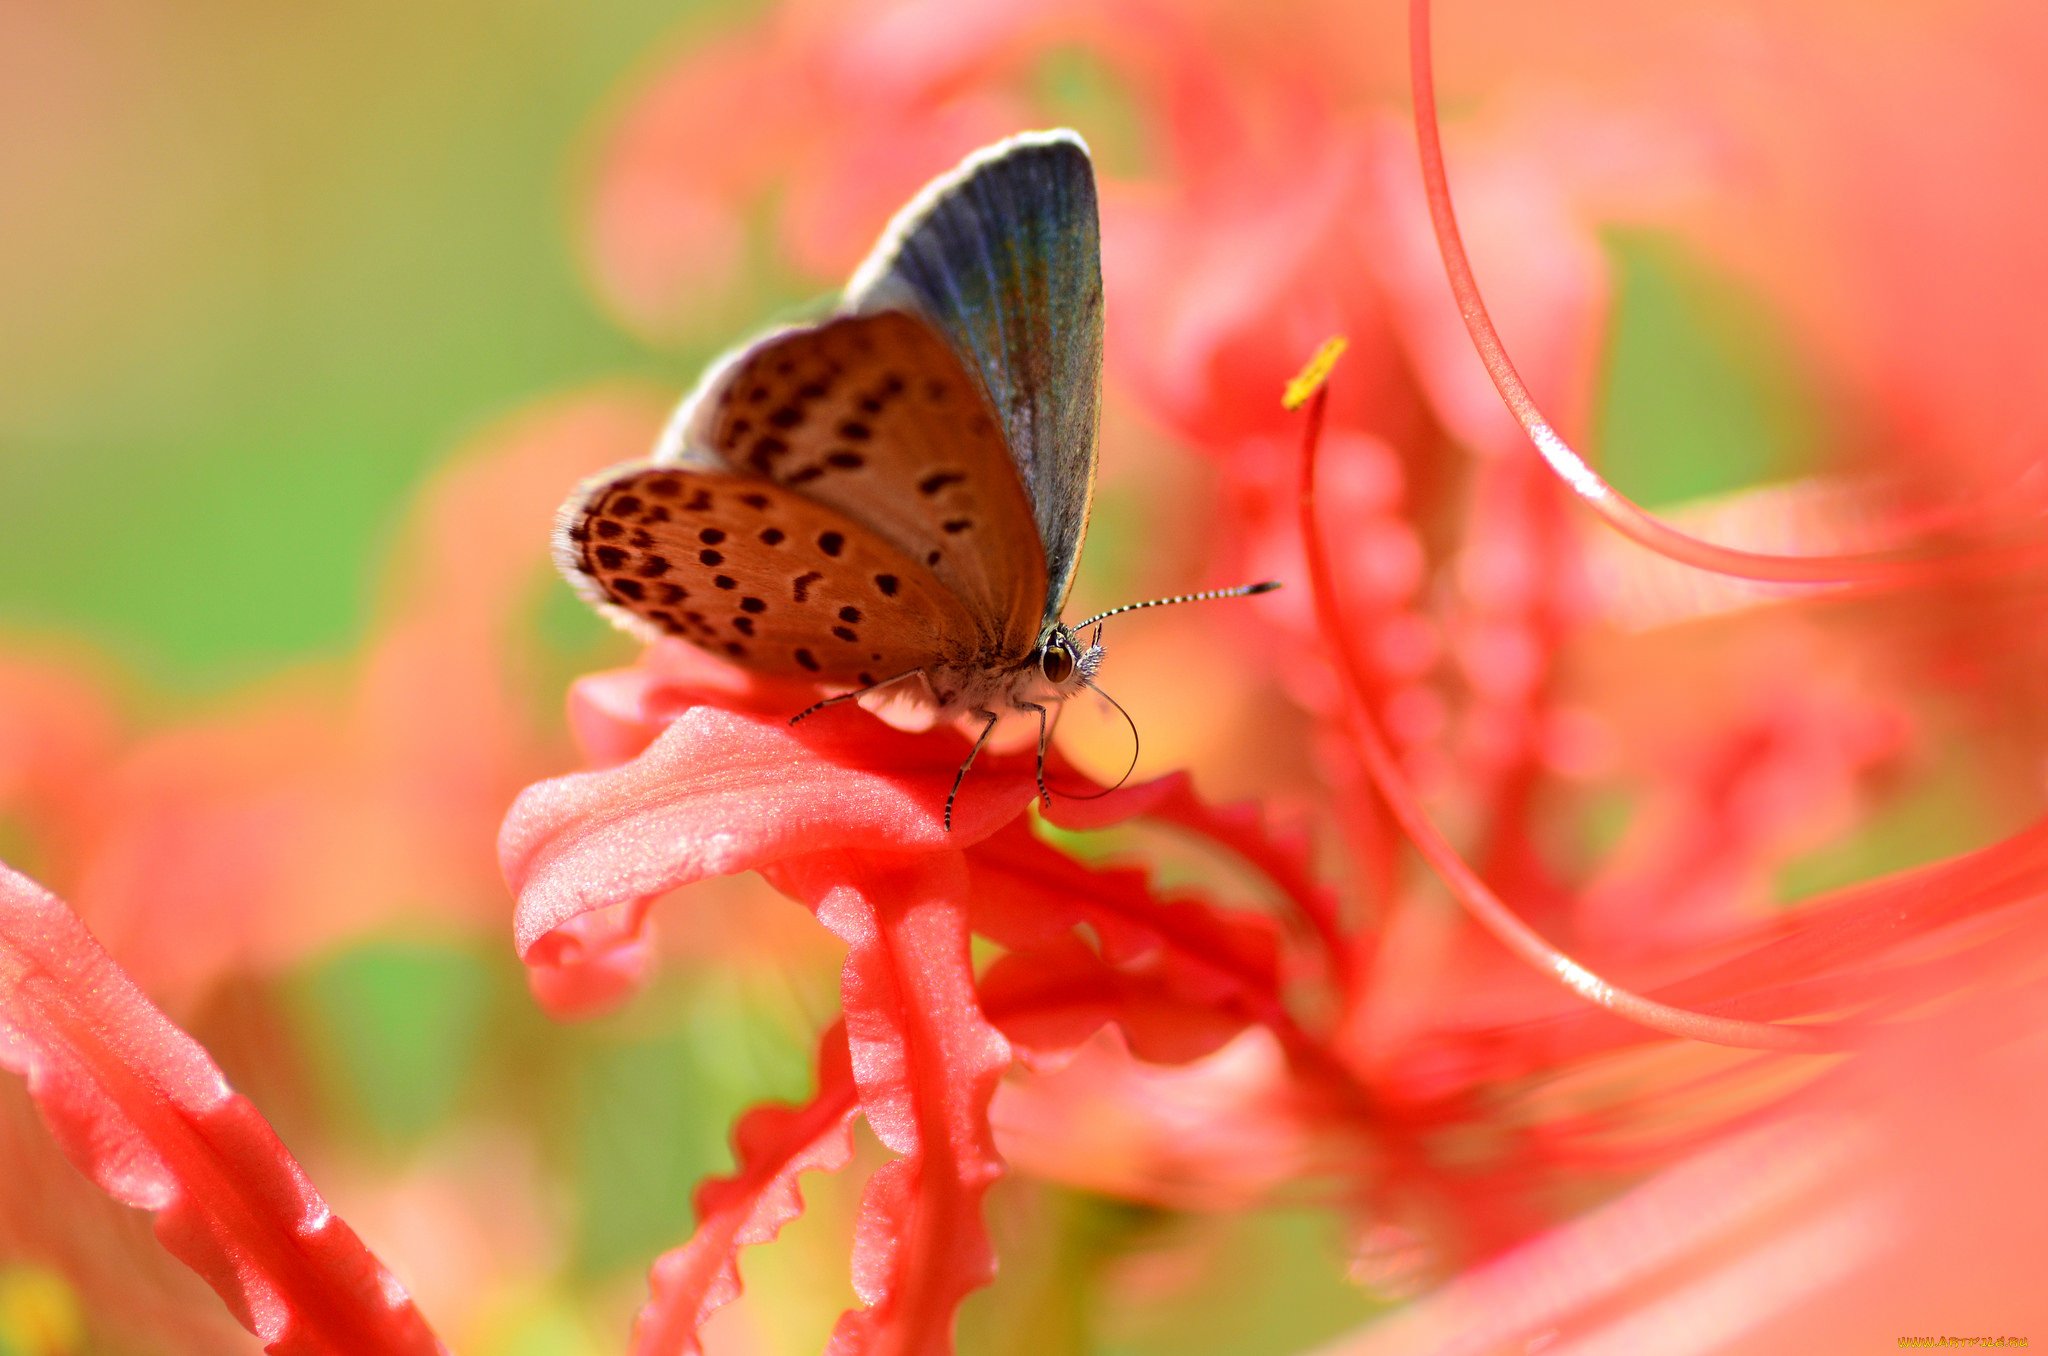 Заставка на телефон для женщин природа. Красивые бабочки. Бабочка на цветке. Яркие бабочки. Бабочки картинки красивые.